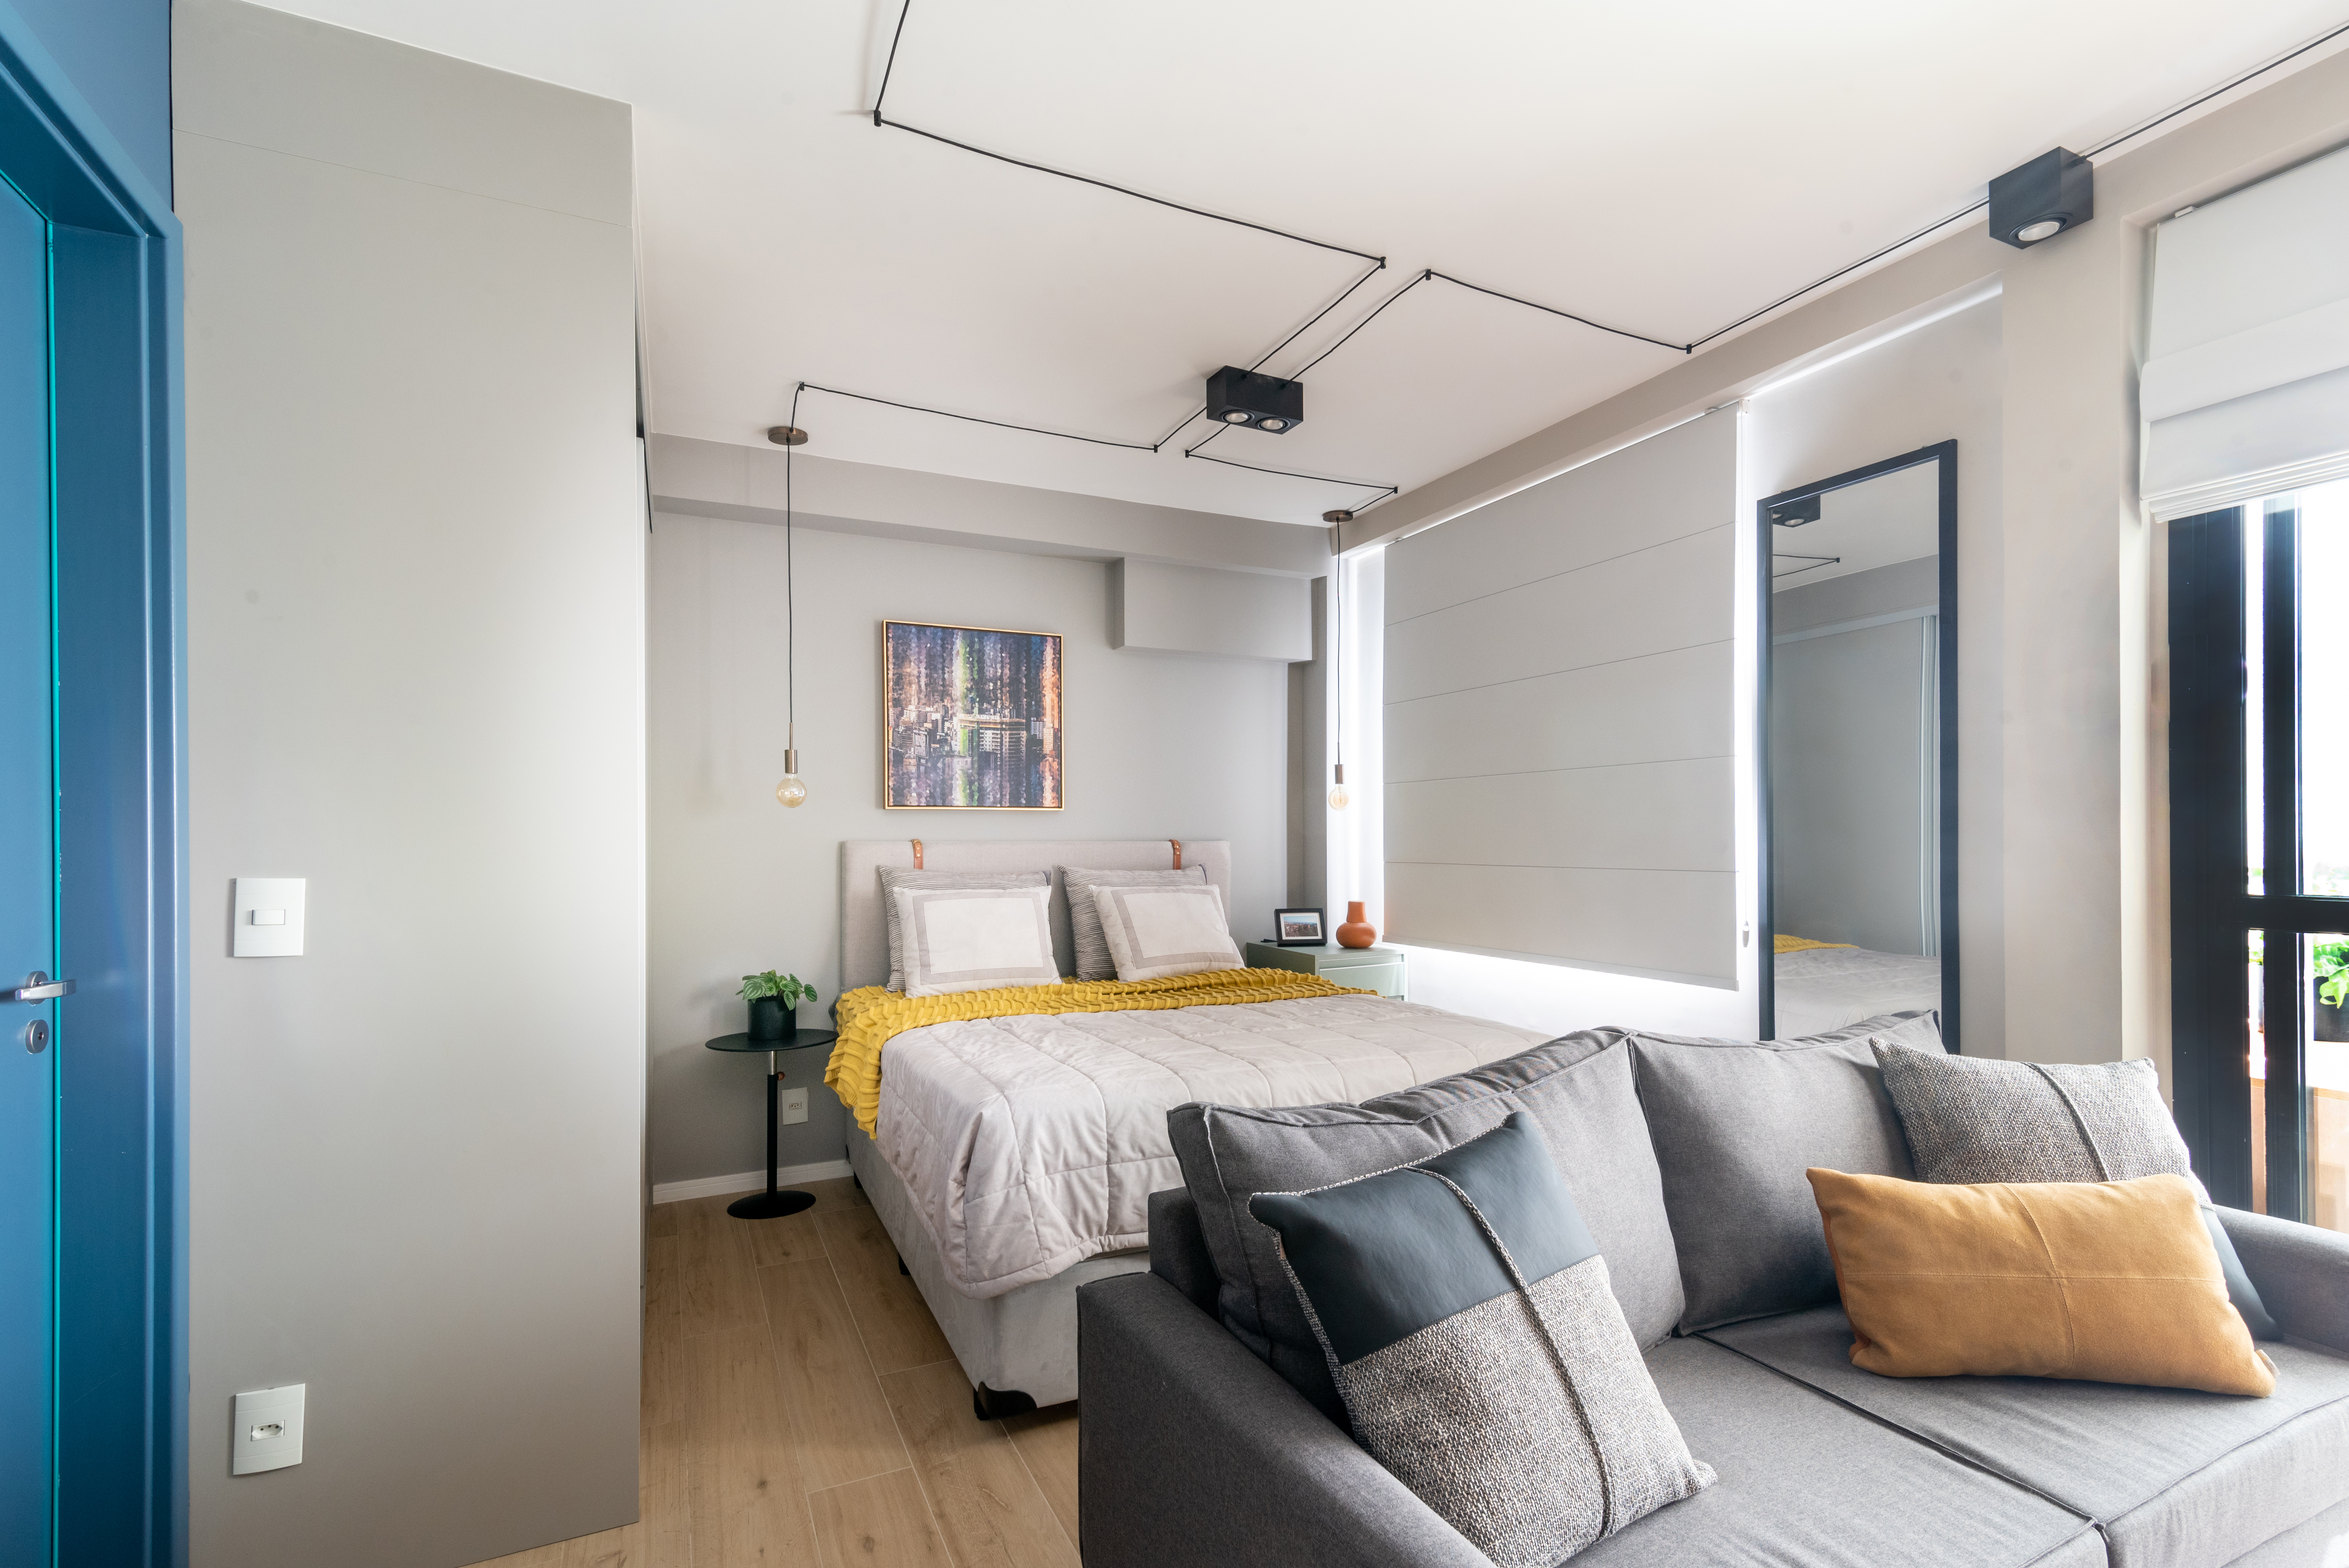 Caixa de marcenaria verde abriga cozinha, bancada e tv em estúdio de 34 m². Projeto de Abrazo Arquitetura. Na foto, quarto com cama de casal, sofá cinza.